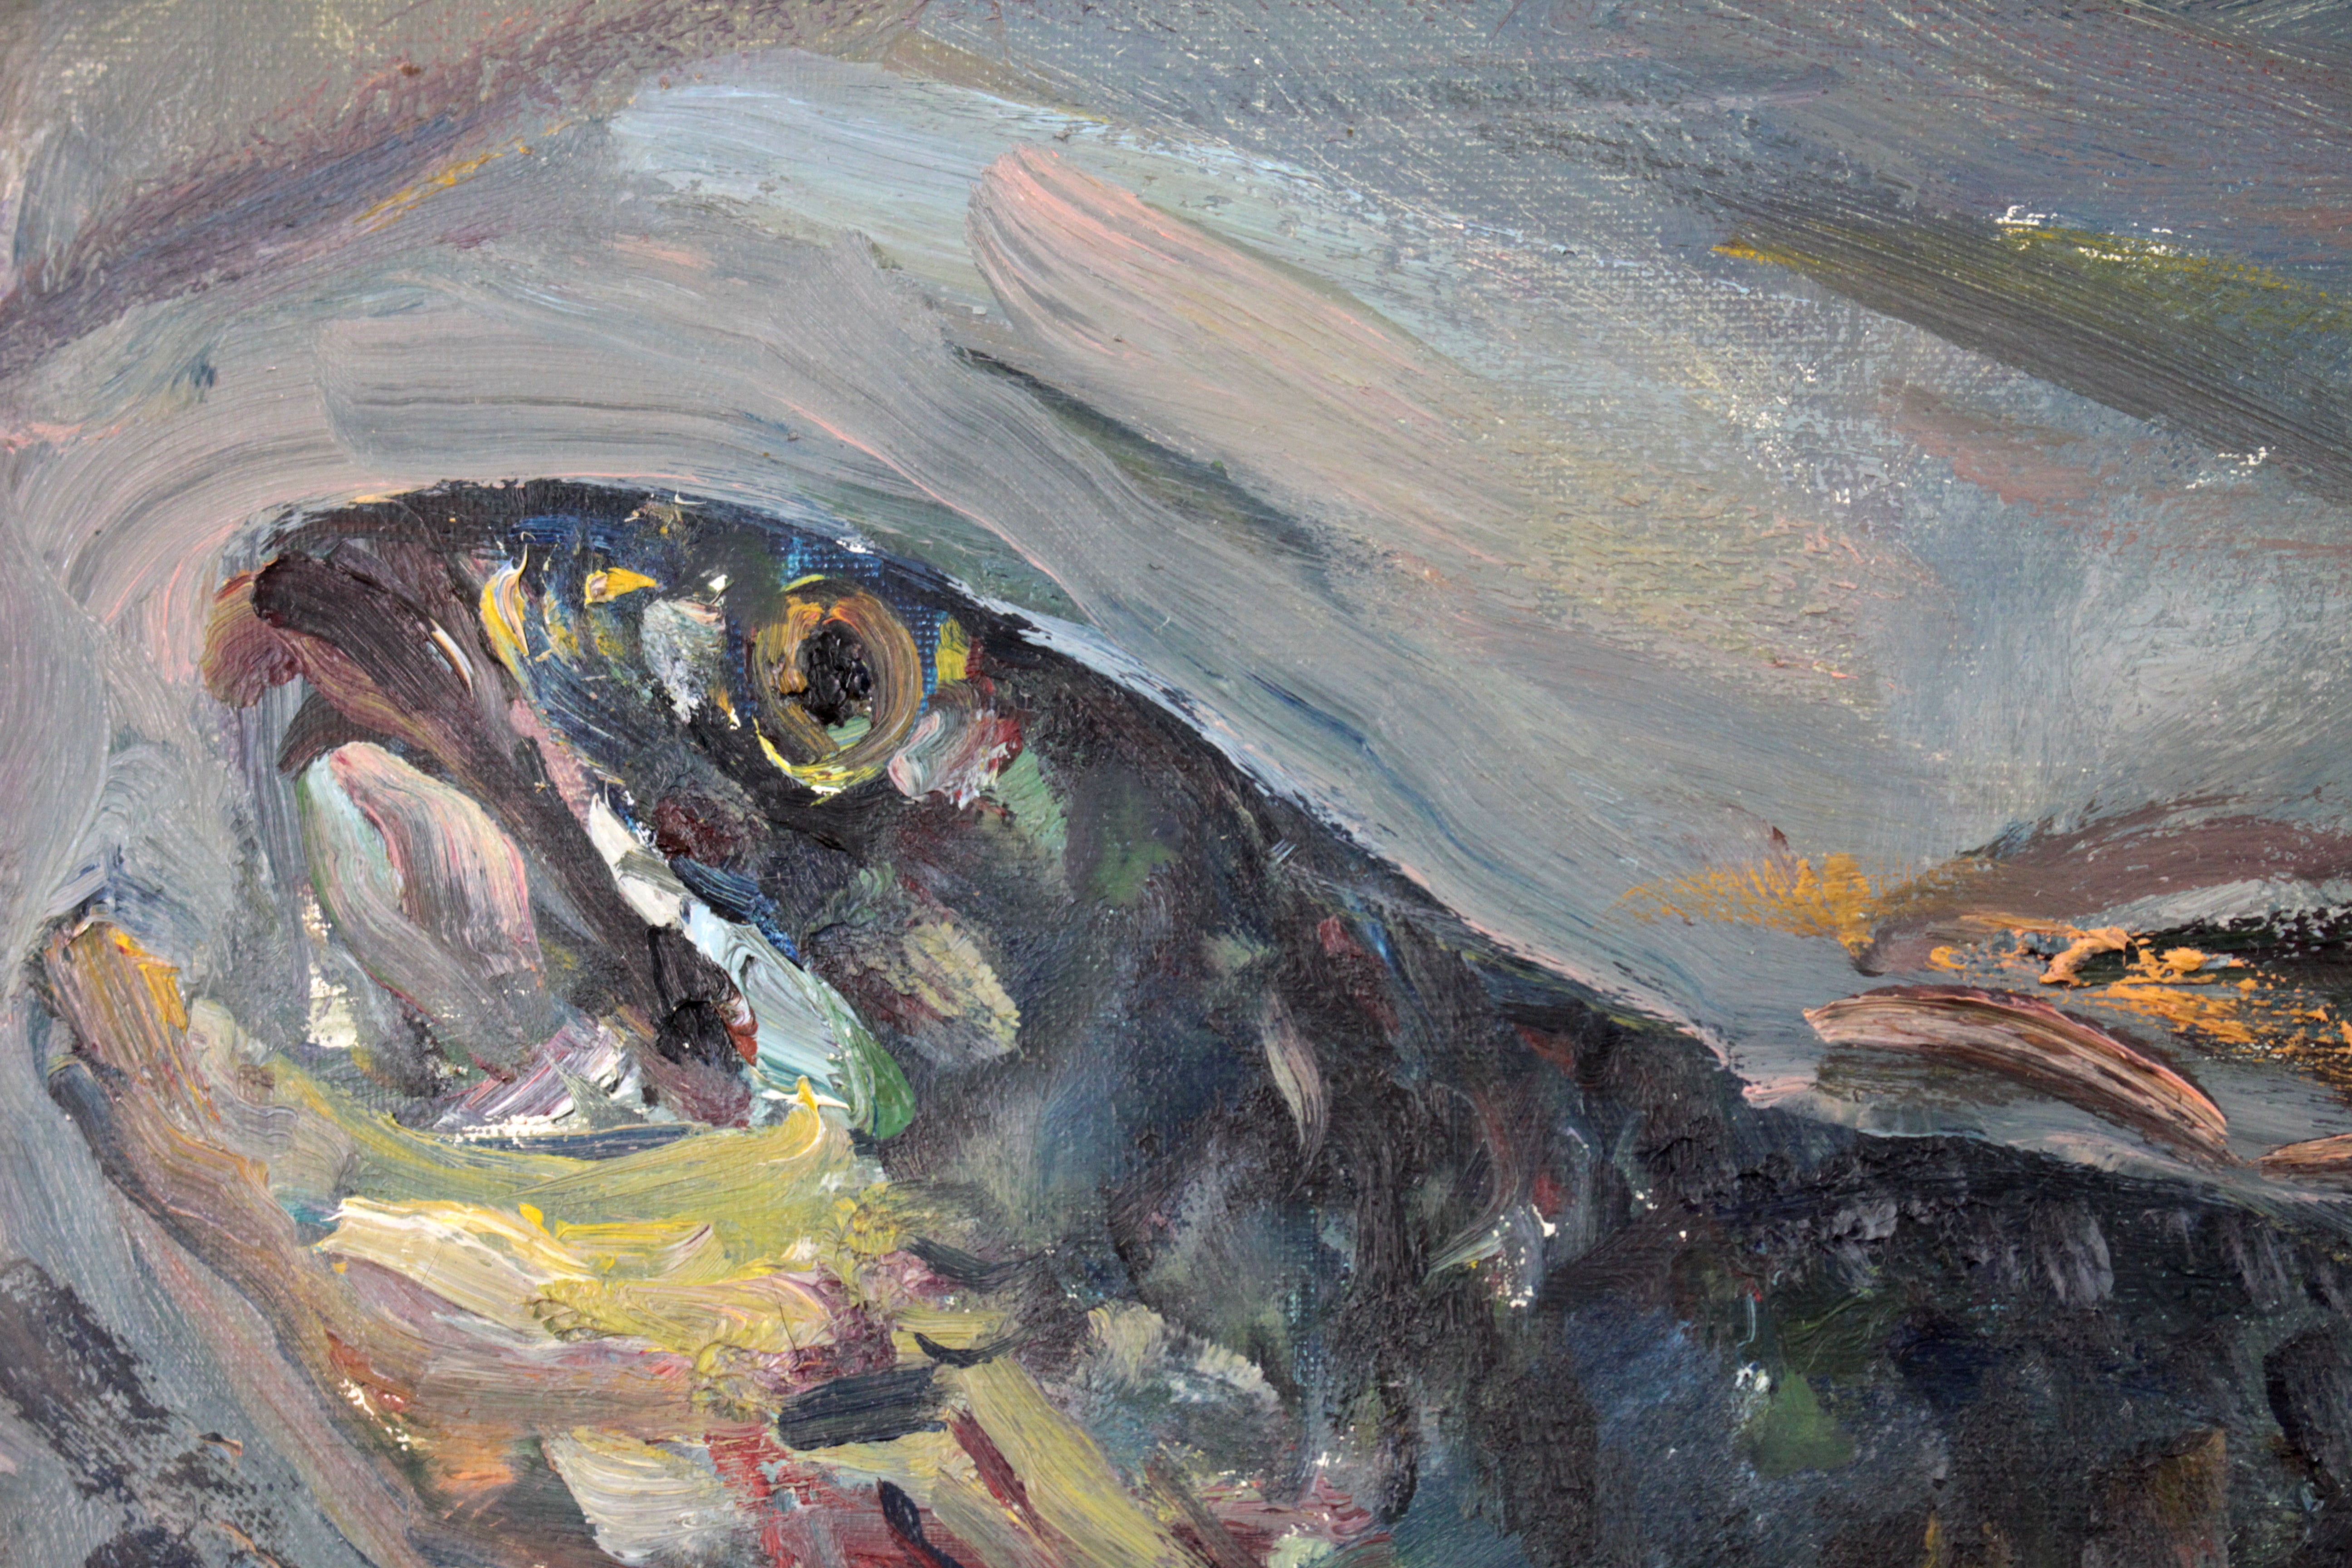 上野山清貢 『魚』 油彩画 - 北海道画廊